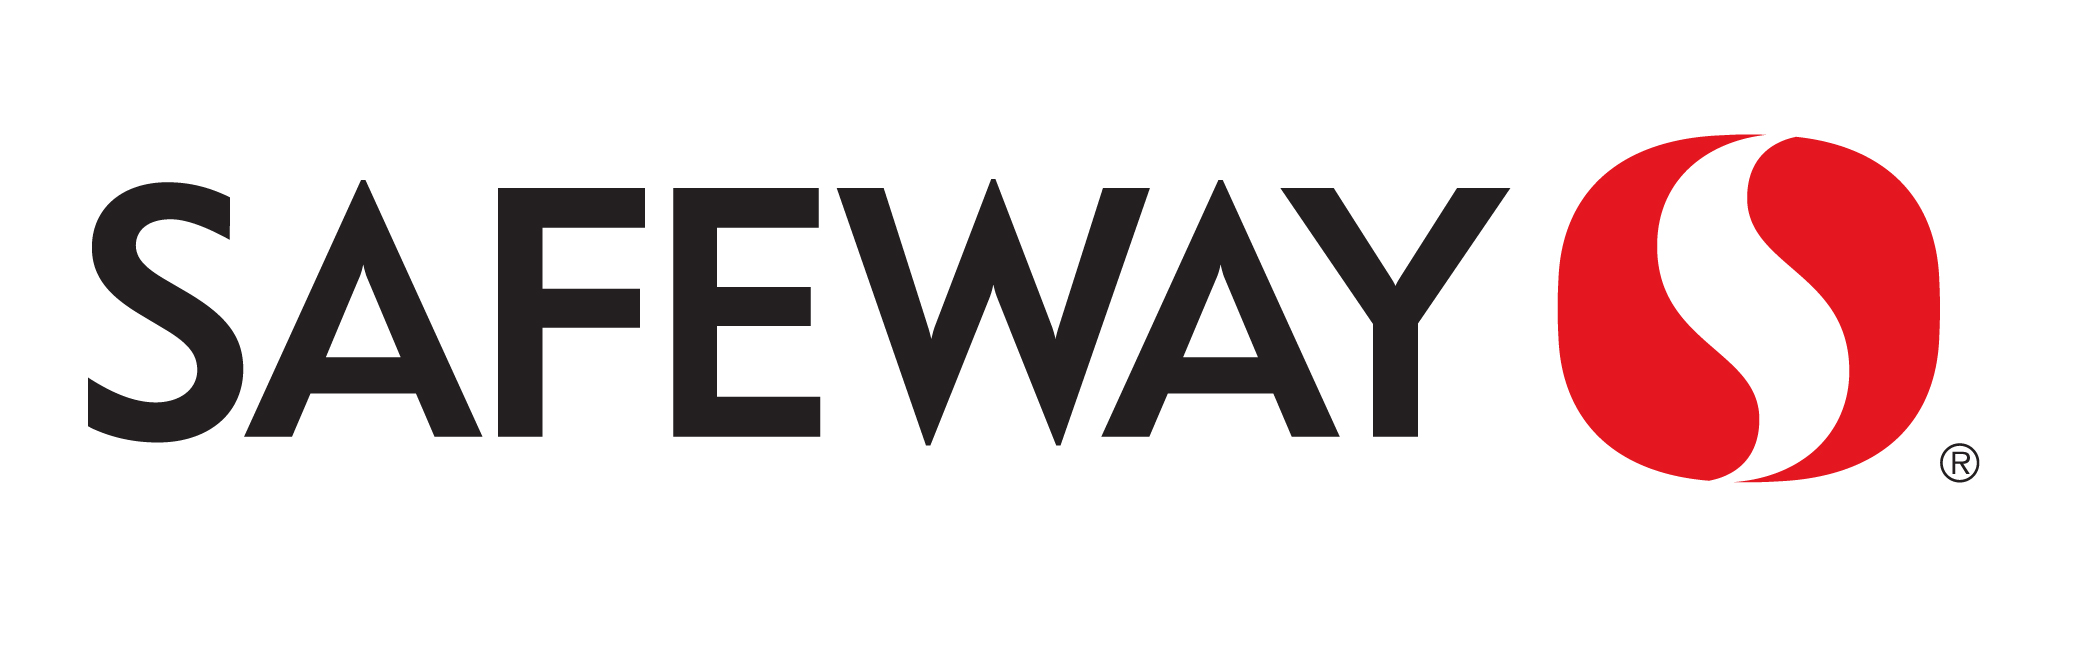 Safeway - Canada Brand Logo